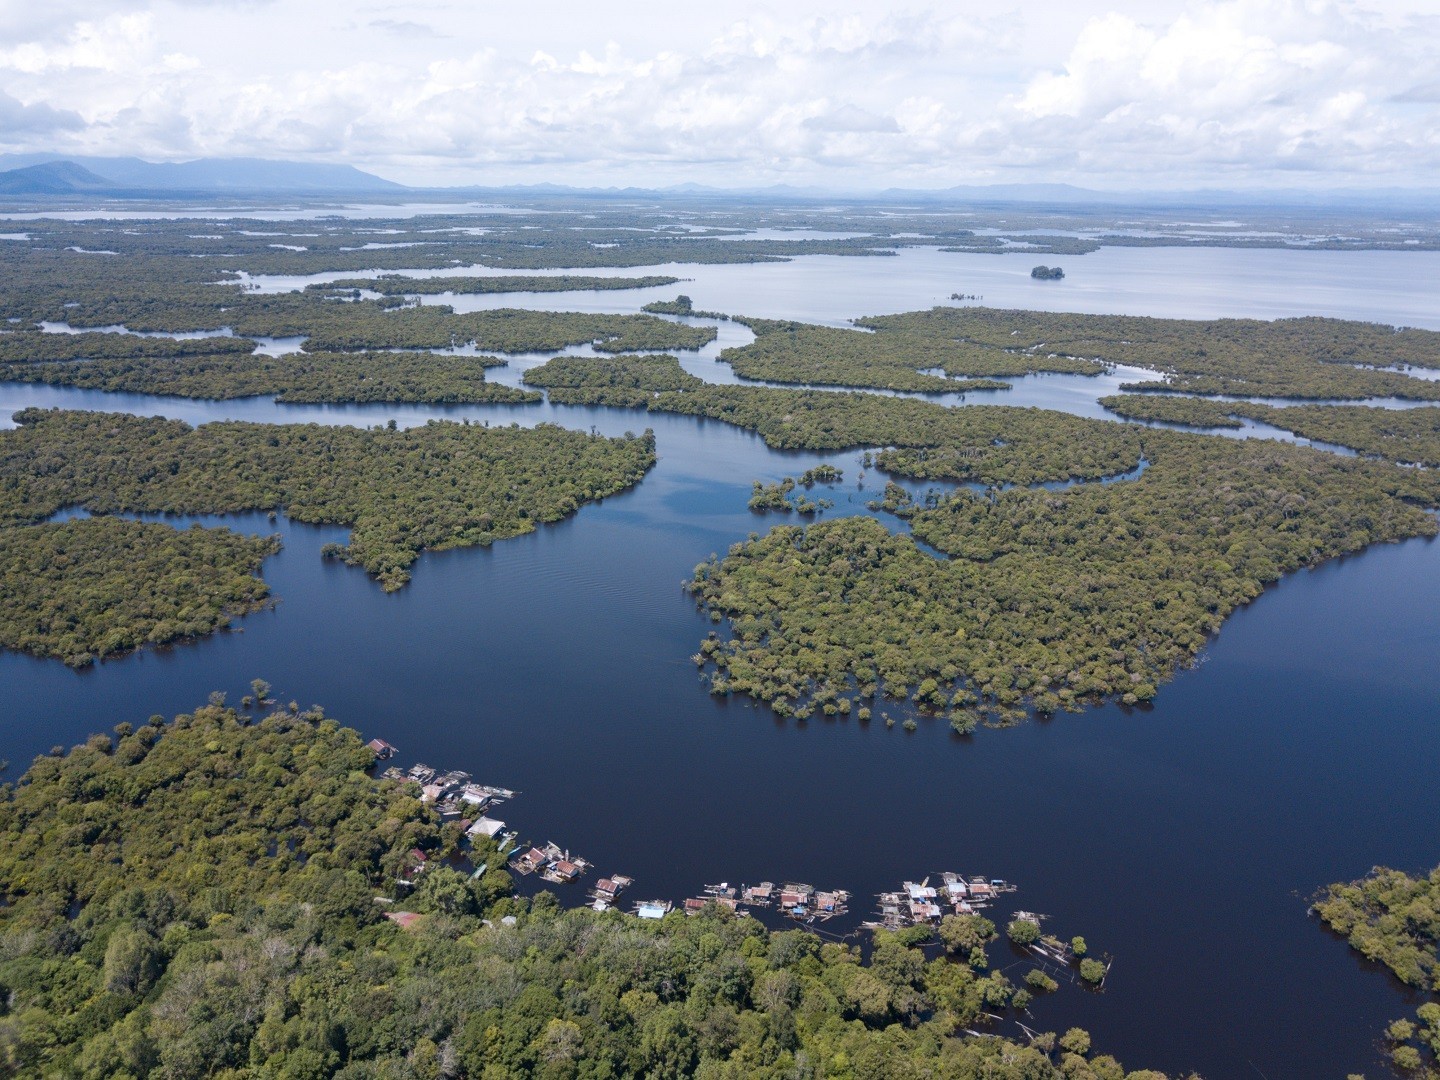 Panorama lanskap Danau Sentarum di Taman Nasional Danau Sentarum Kapuas Hulu Kalimantan Barat - uji astrono